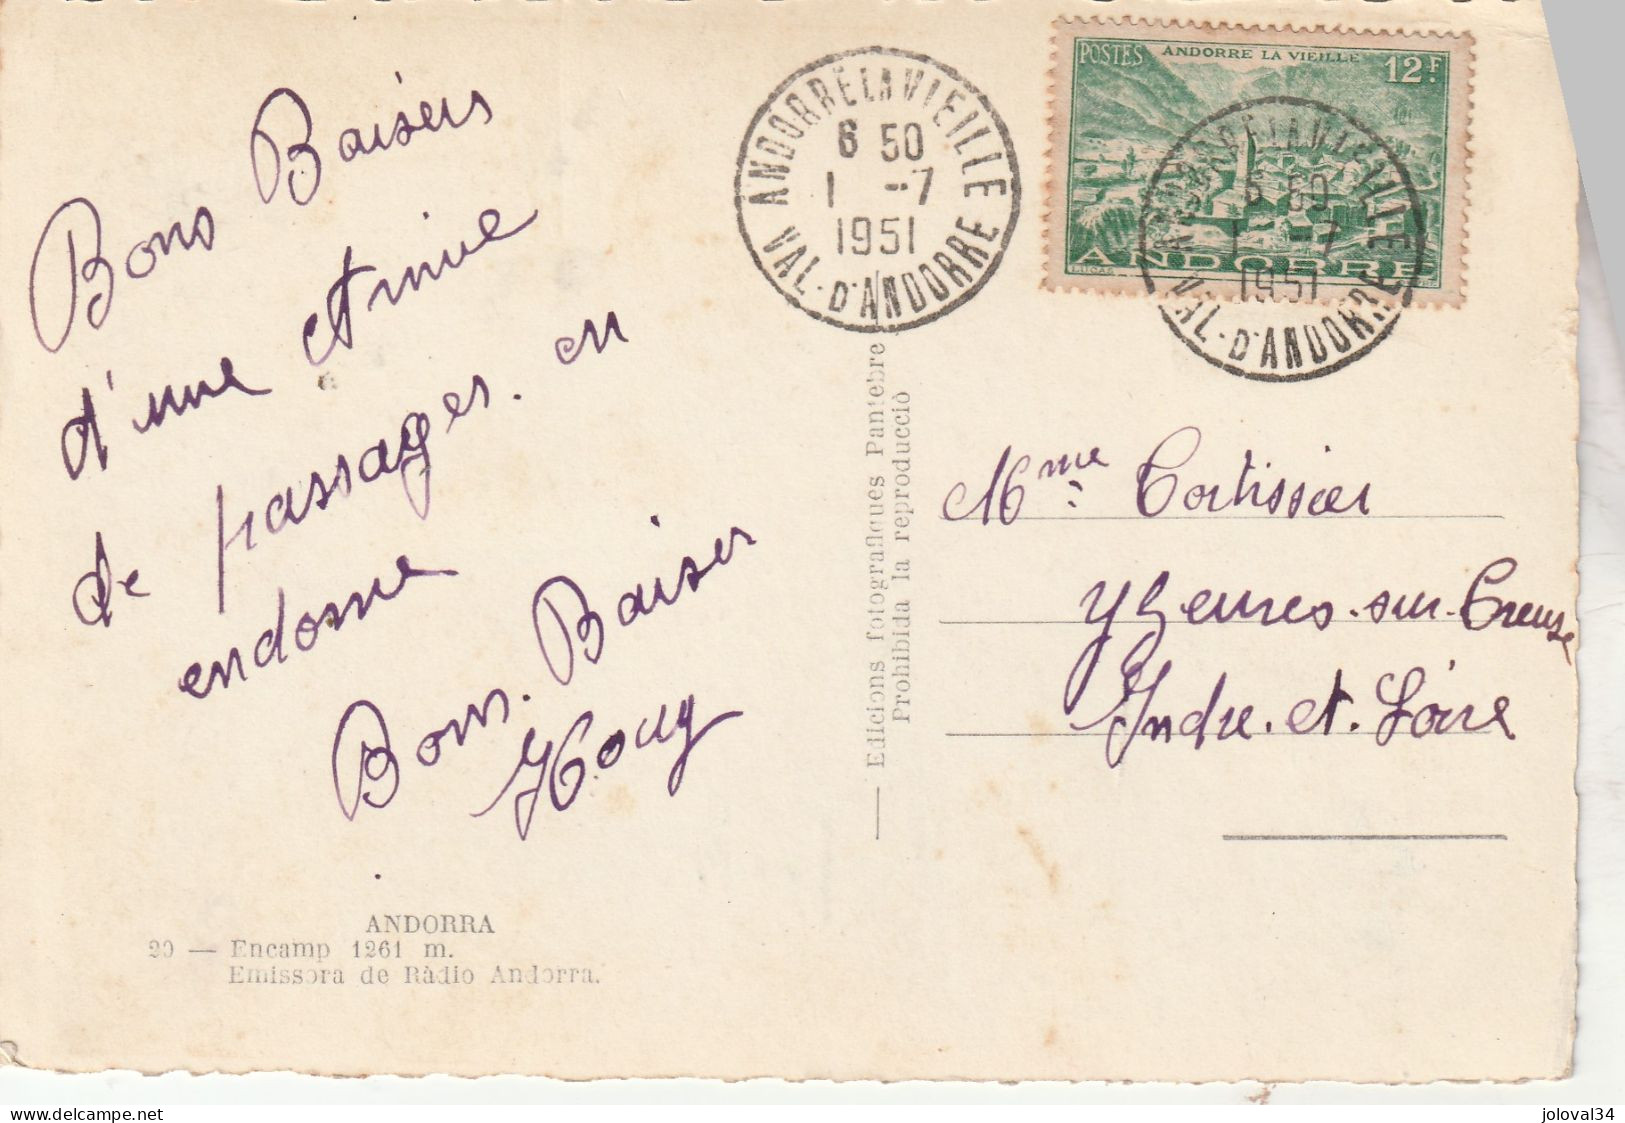 Andorre Yvert 130 Cachet Andorre La Vieille 1/7/1951 Sur Carte Postale Encamp - Lettres & Documents